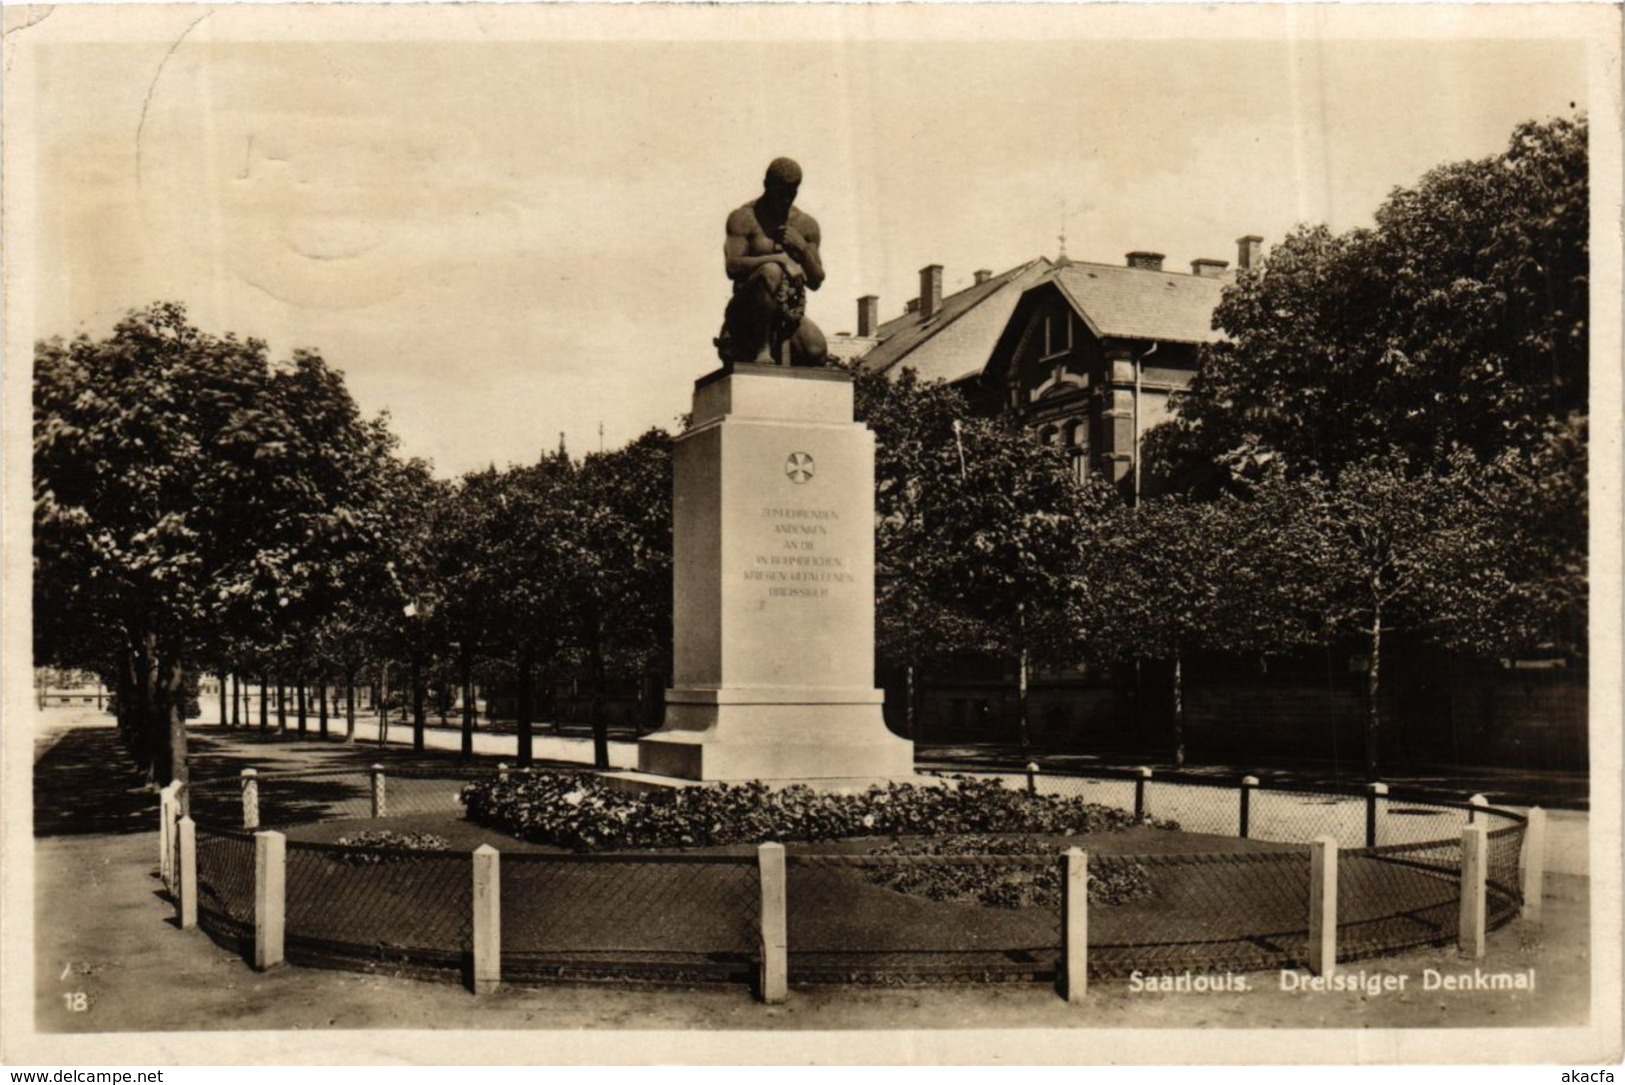 CPA AK Saarlouis Dreissiger Denkmal GERMANY (939579) - Kreis Saarlouis